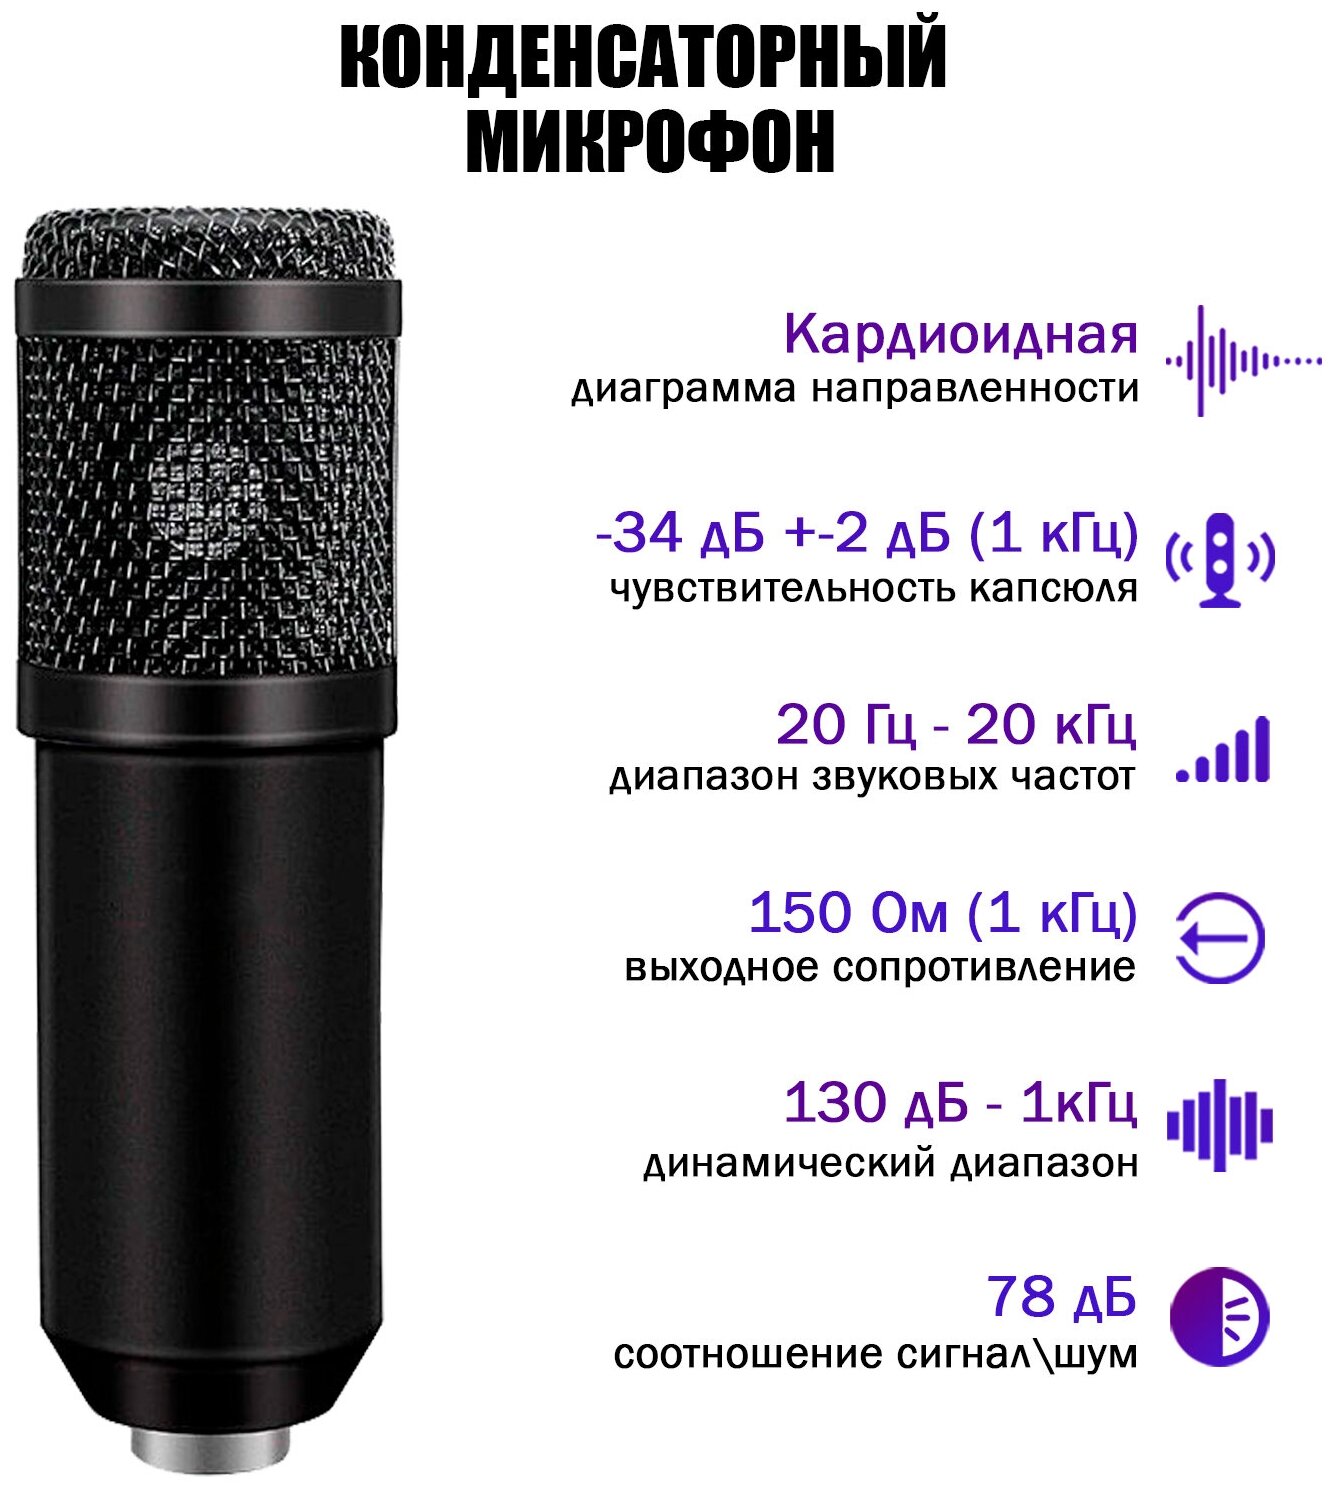 Комплект KM800-SC конденсаторный микрофон BM800 чёрный с фантомным питанием 48V на настольной стойке c кабелями для подключения